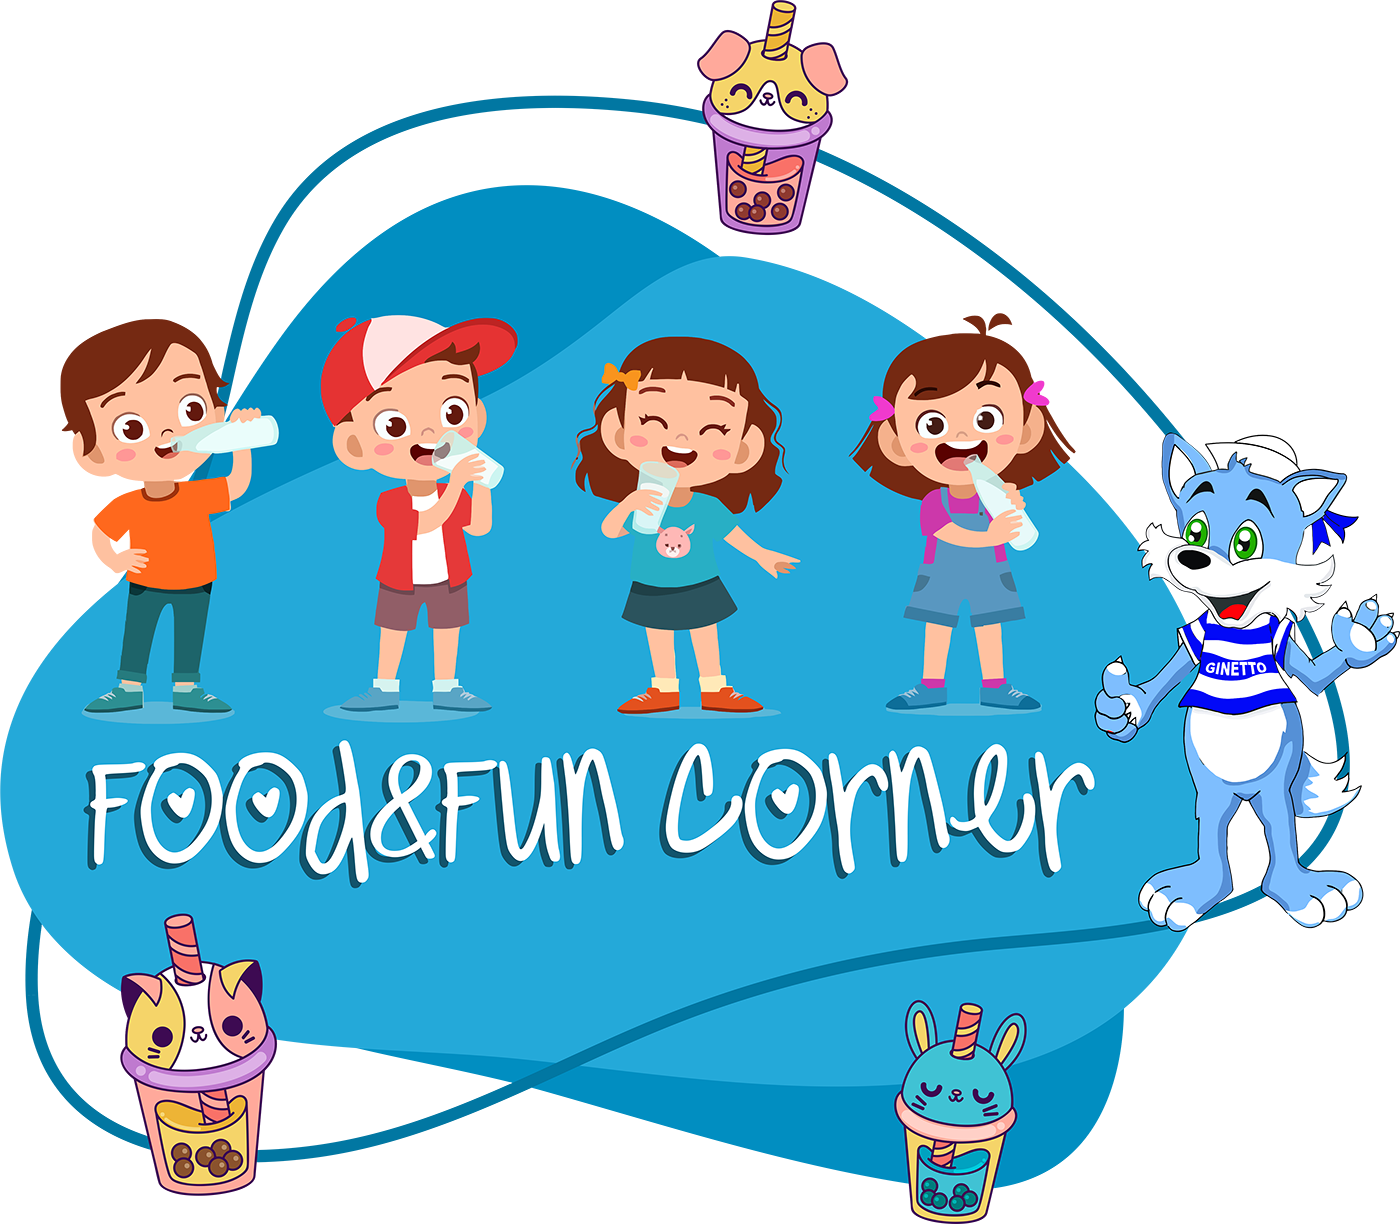 Food&Fun Corner